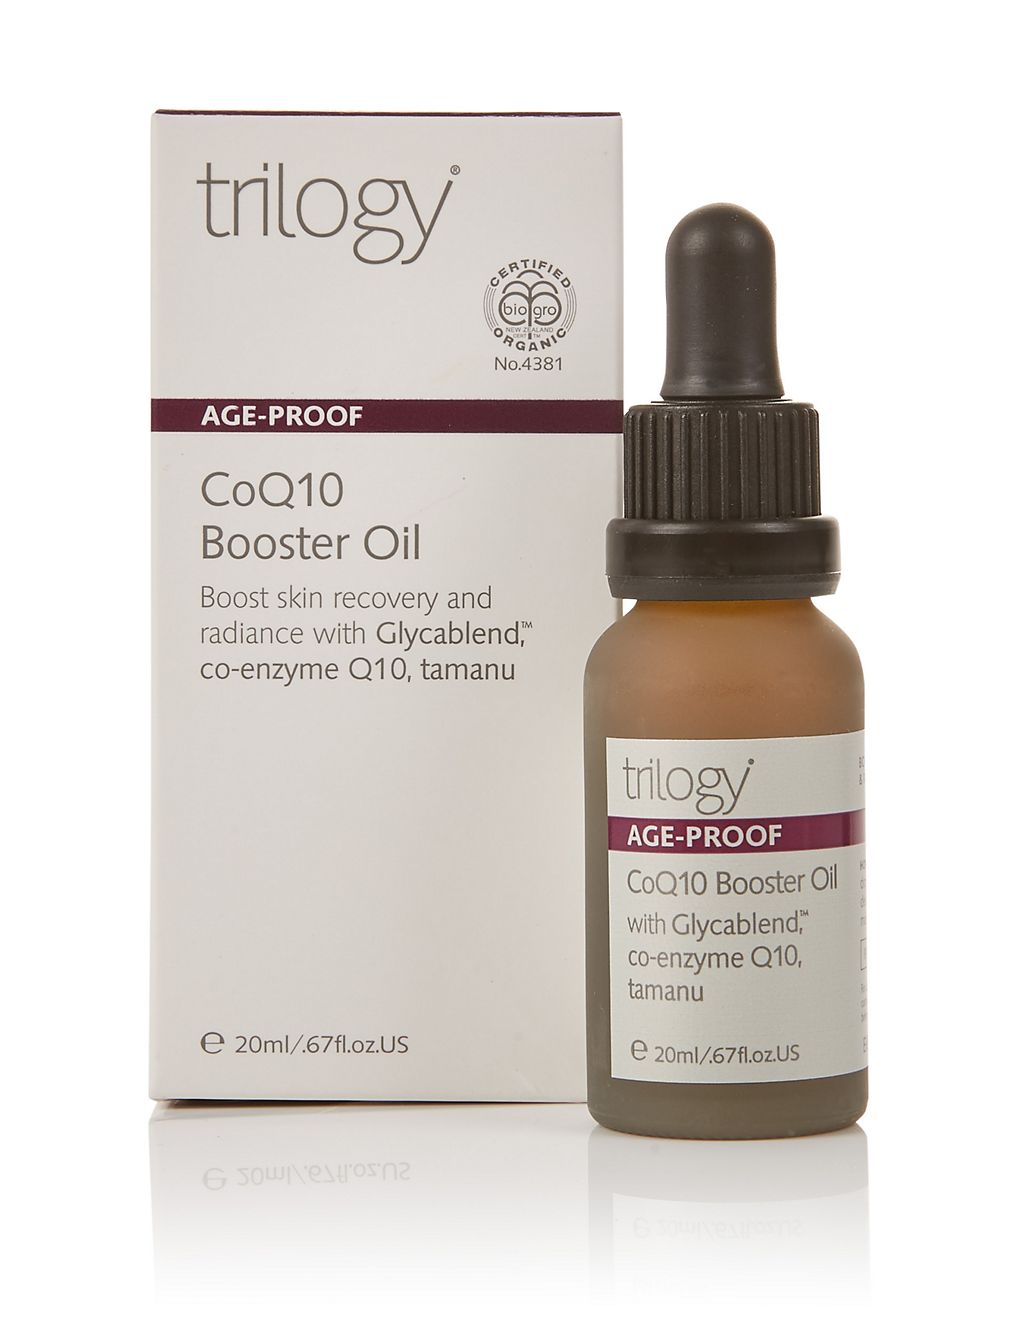 ondanks Honderd jaar bezorgdheid Age-Proof CoQ10 Booster Oil 20ml | Trilogy | M&S